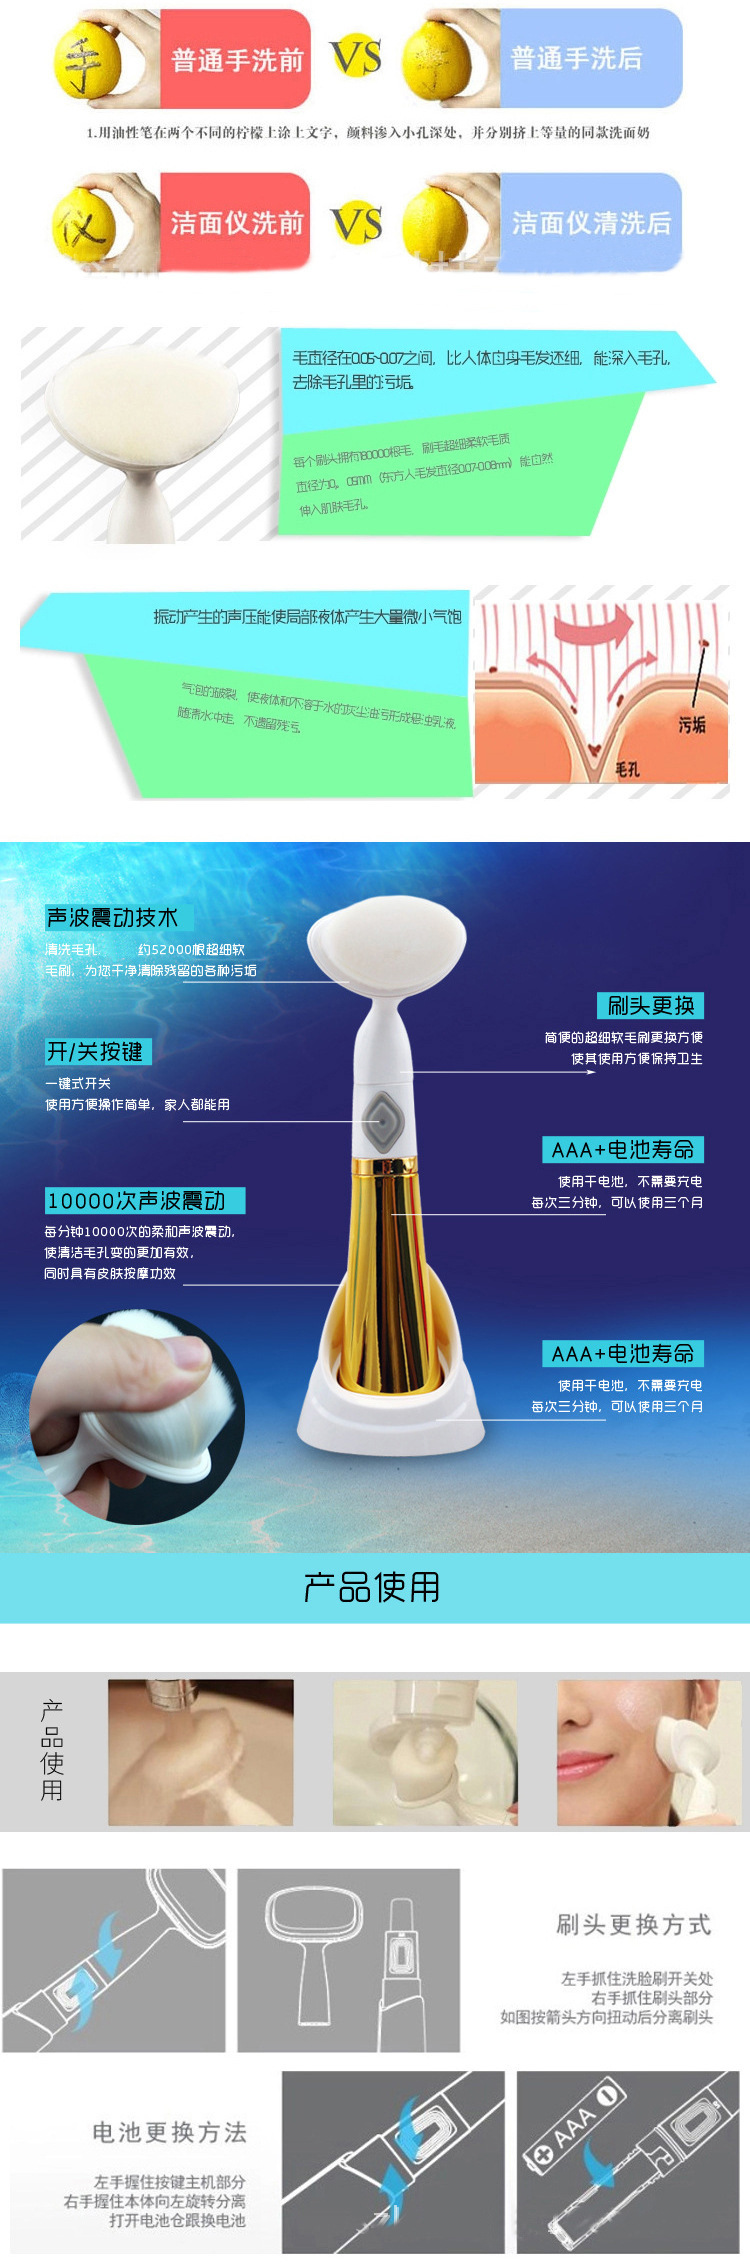 新款爆款韩国洗脸按摩器 六代电动美白仪 毛孔清洁洗脸机洁面仪示例图6